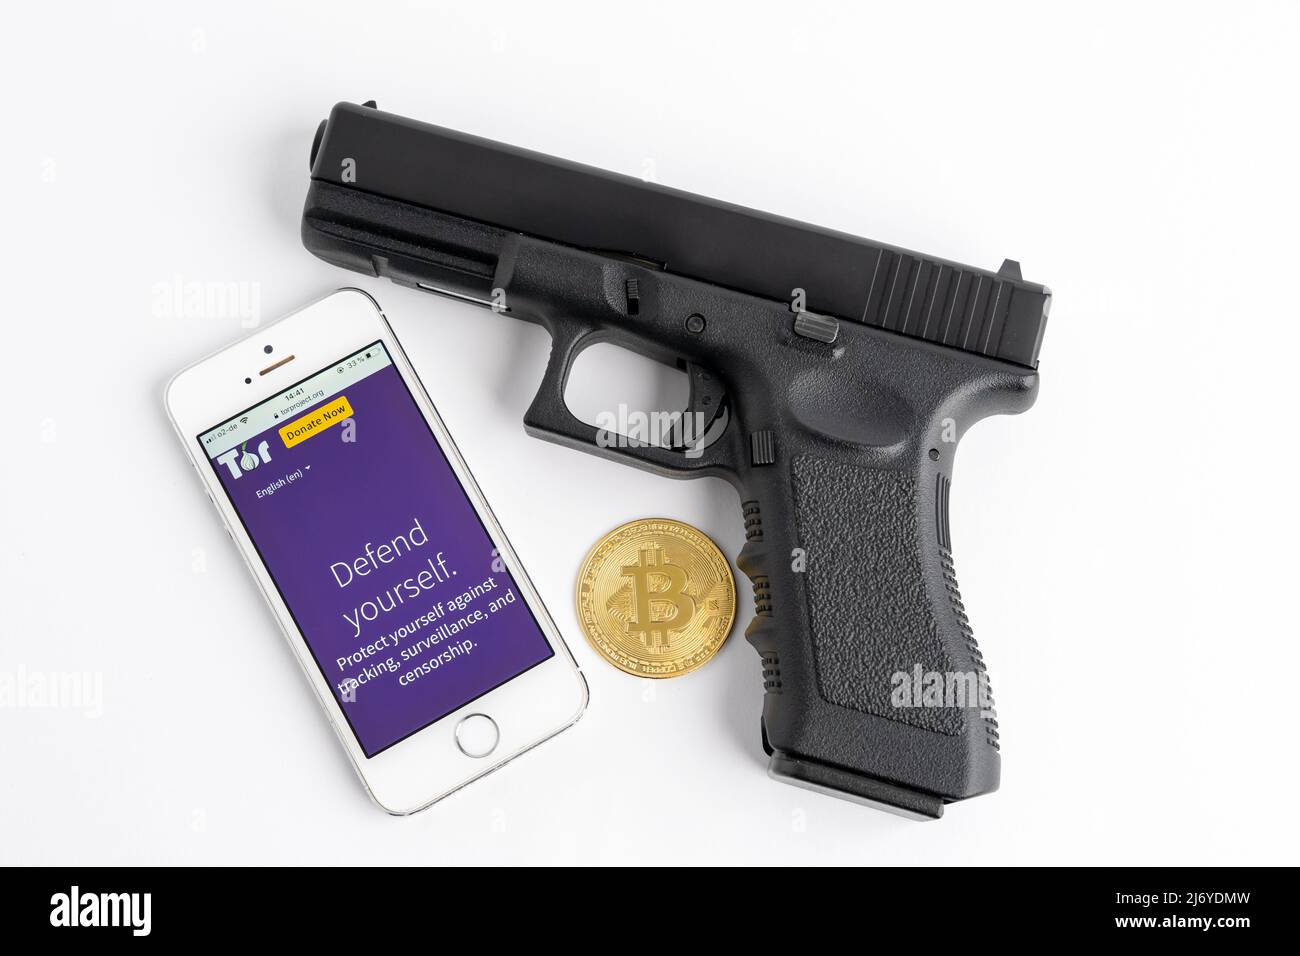 Tor browser su uno smartphone, una pistola e un Bitcoin come simboli per il darknet. Usando i soldi del BTC nel fotoricettore scuro per comprare le cose illegali come un'arma. Foto Stock